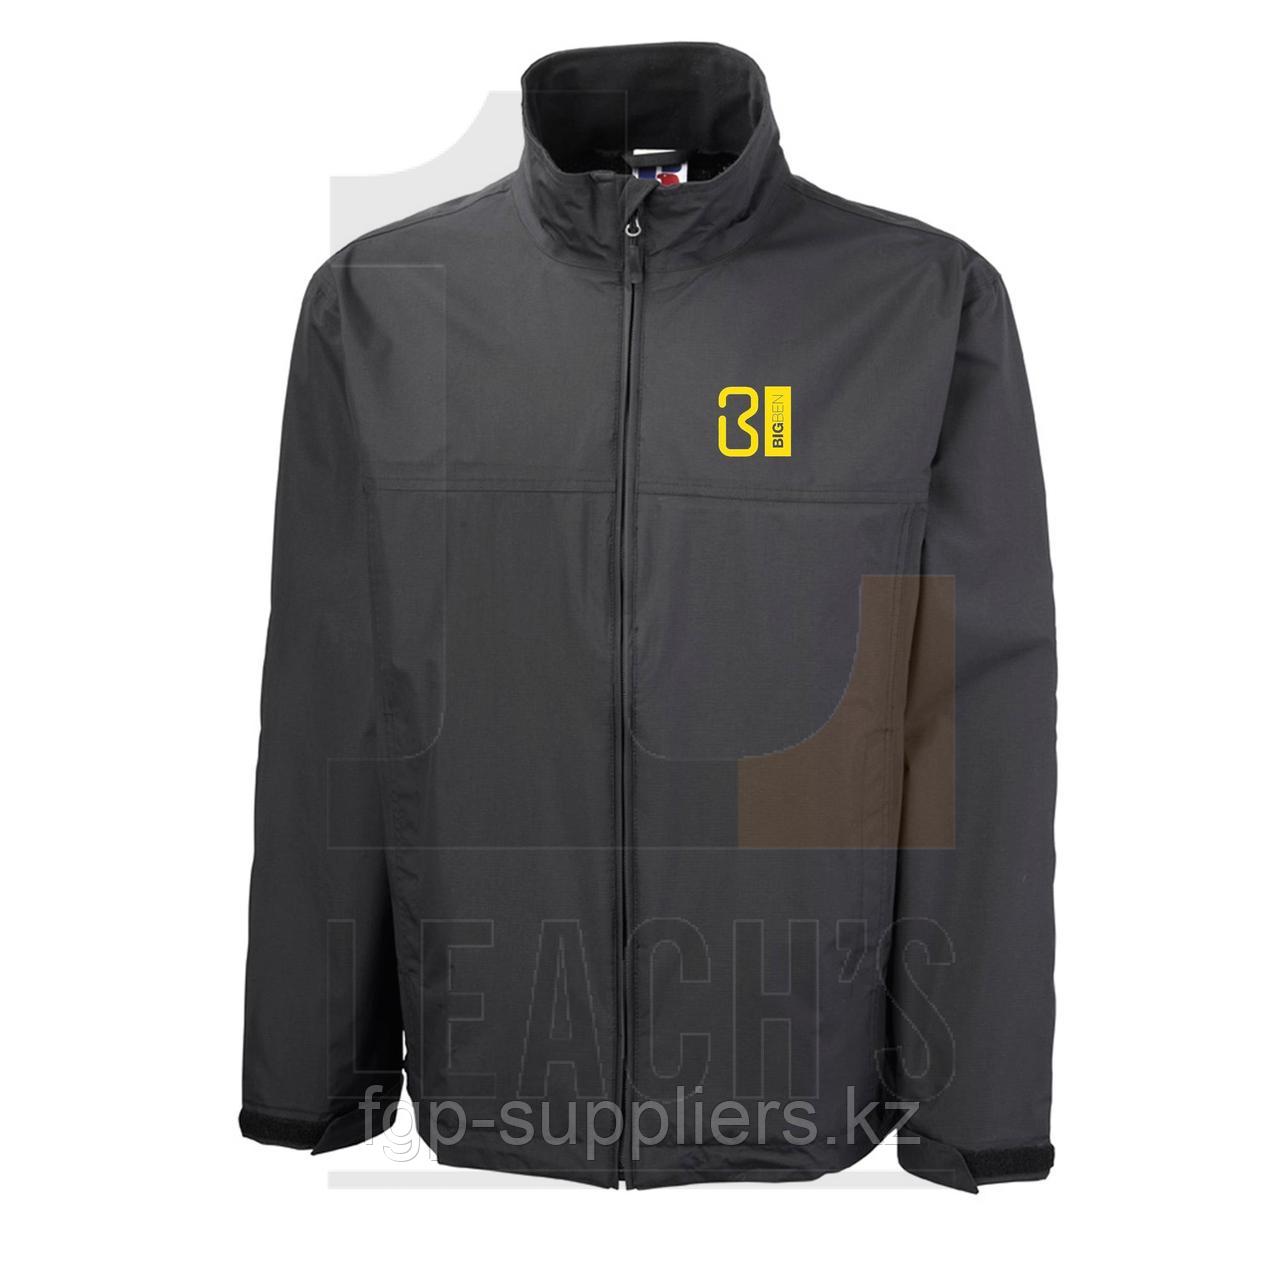 BIG BEN Supreme Breathable Waterproof Jacket Black / BIG BEN Водонепроницаемая и пропускающая воздух куртка высшего качества черная